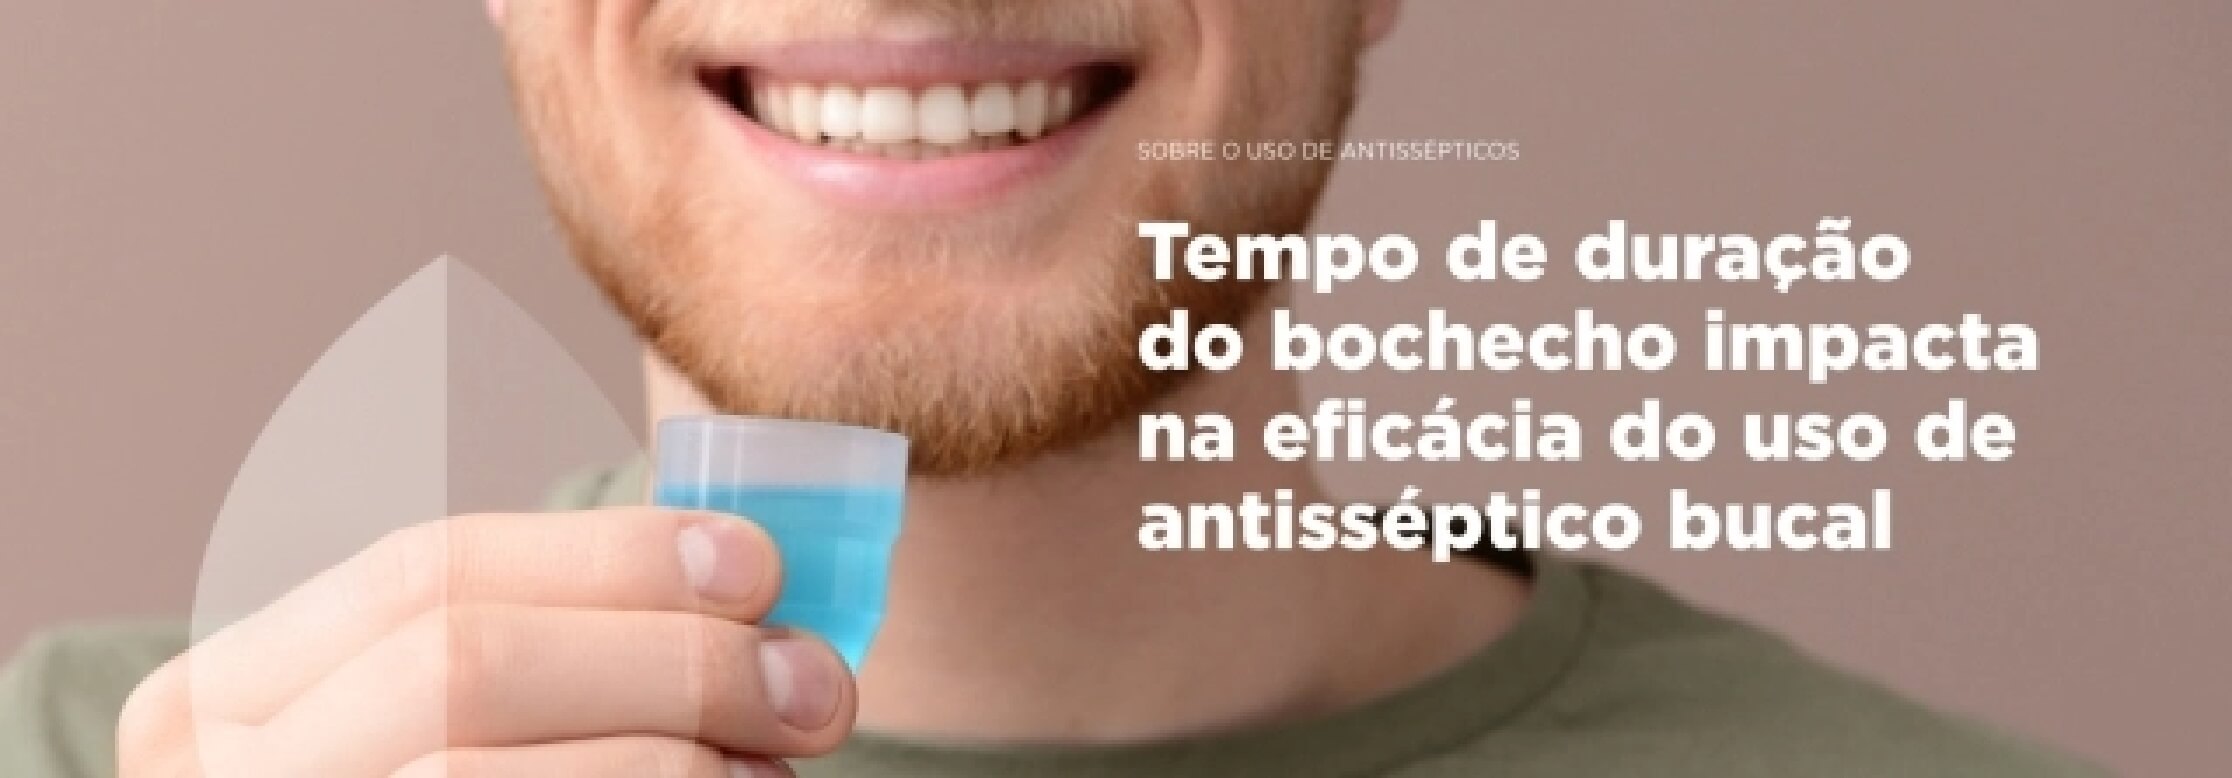 Banner Tempo de duração do bochecho impacta na eficácia do uso de antisséptico bucal | Odontologia | J&J